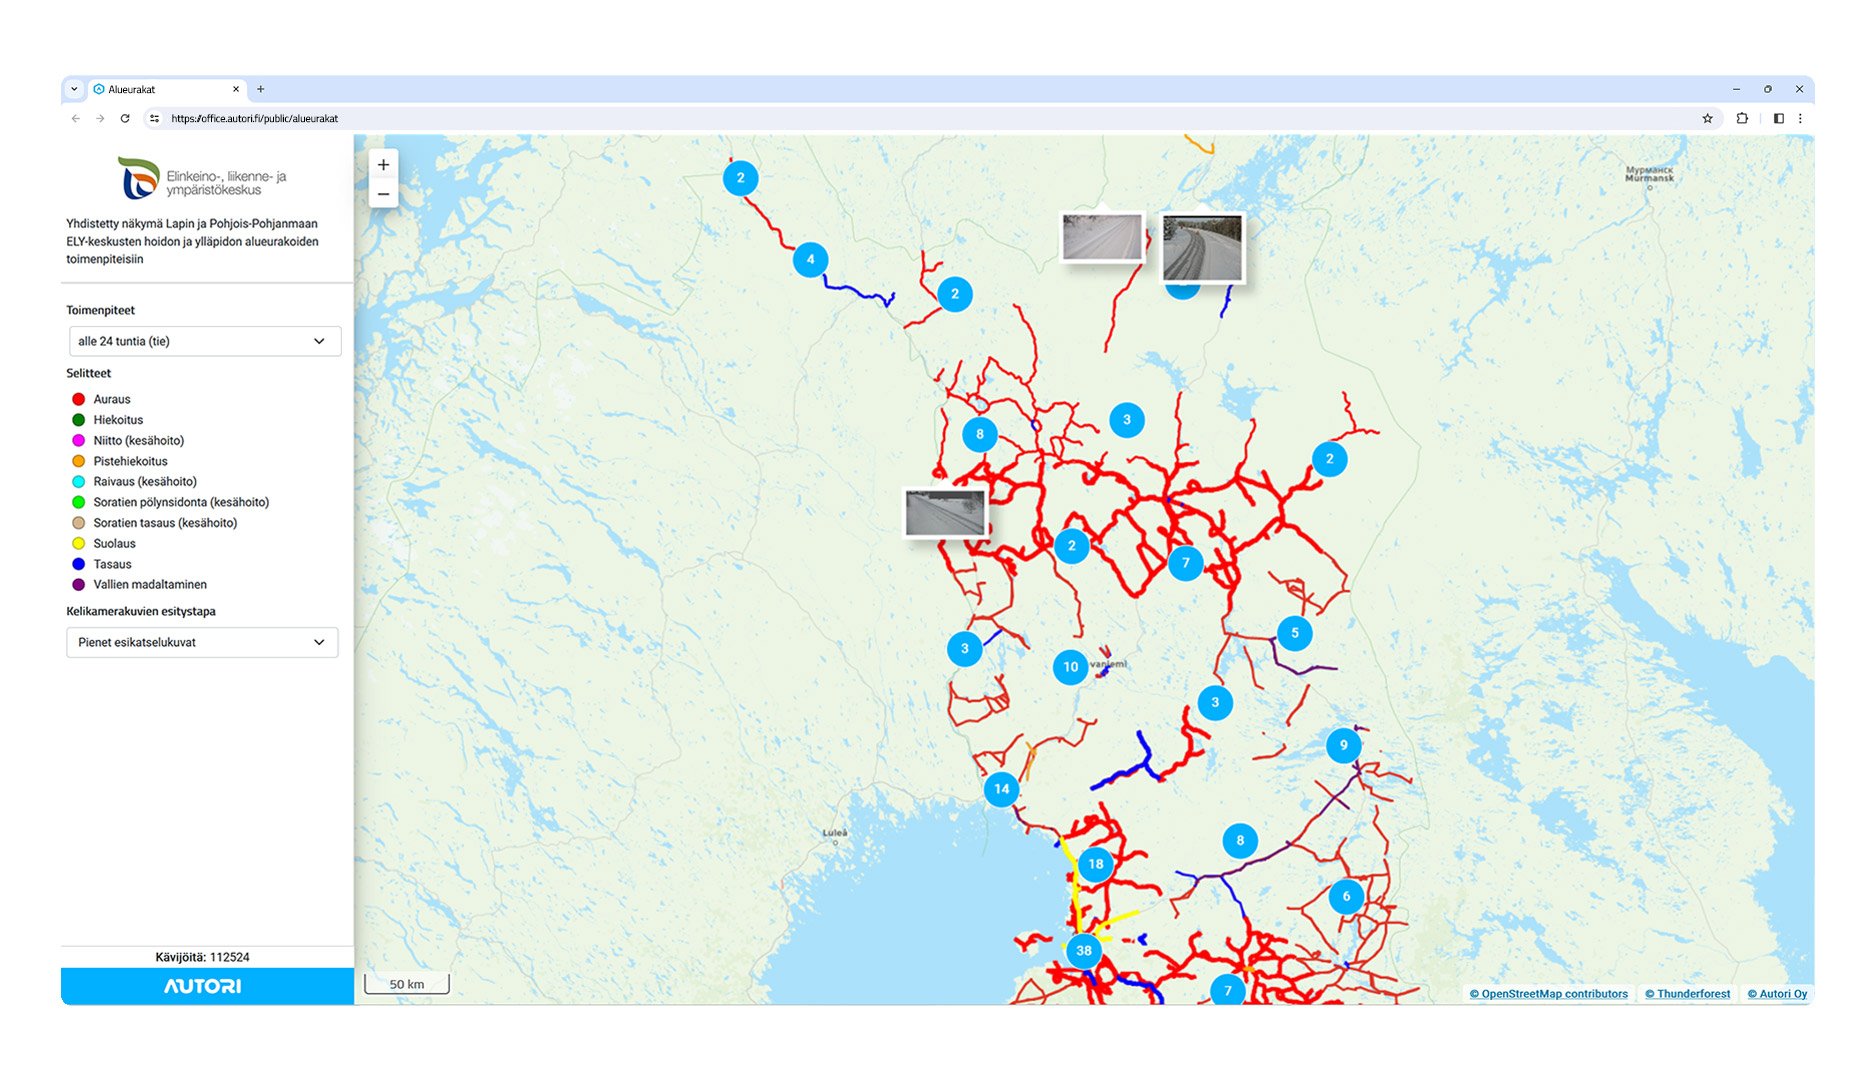 Pohjois-Pohjanmaan ja Lapin ELY-keskusten tien kunnossapidon toimenpiteet 24 tunnin ajalta, mm. auraus, hiekoitus, suolaus